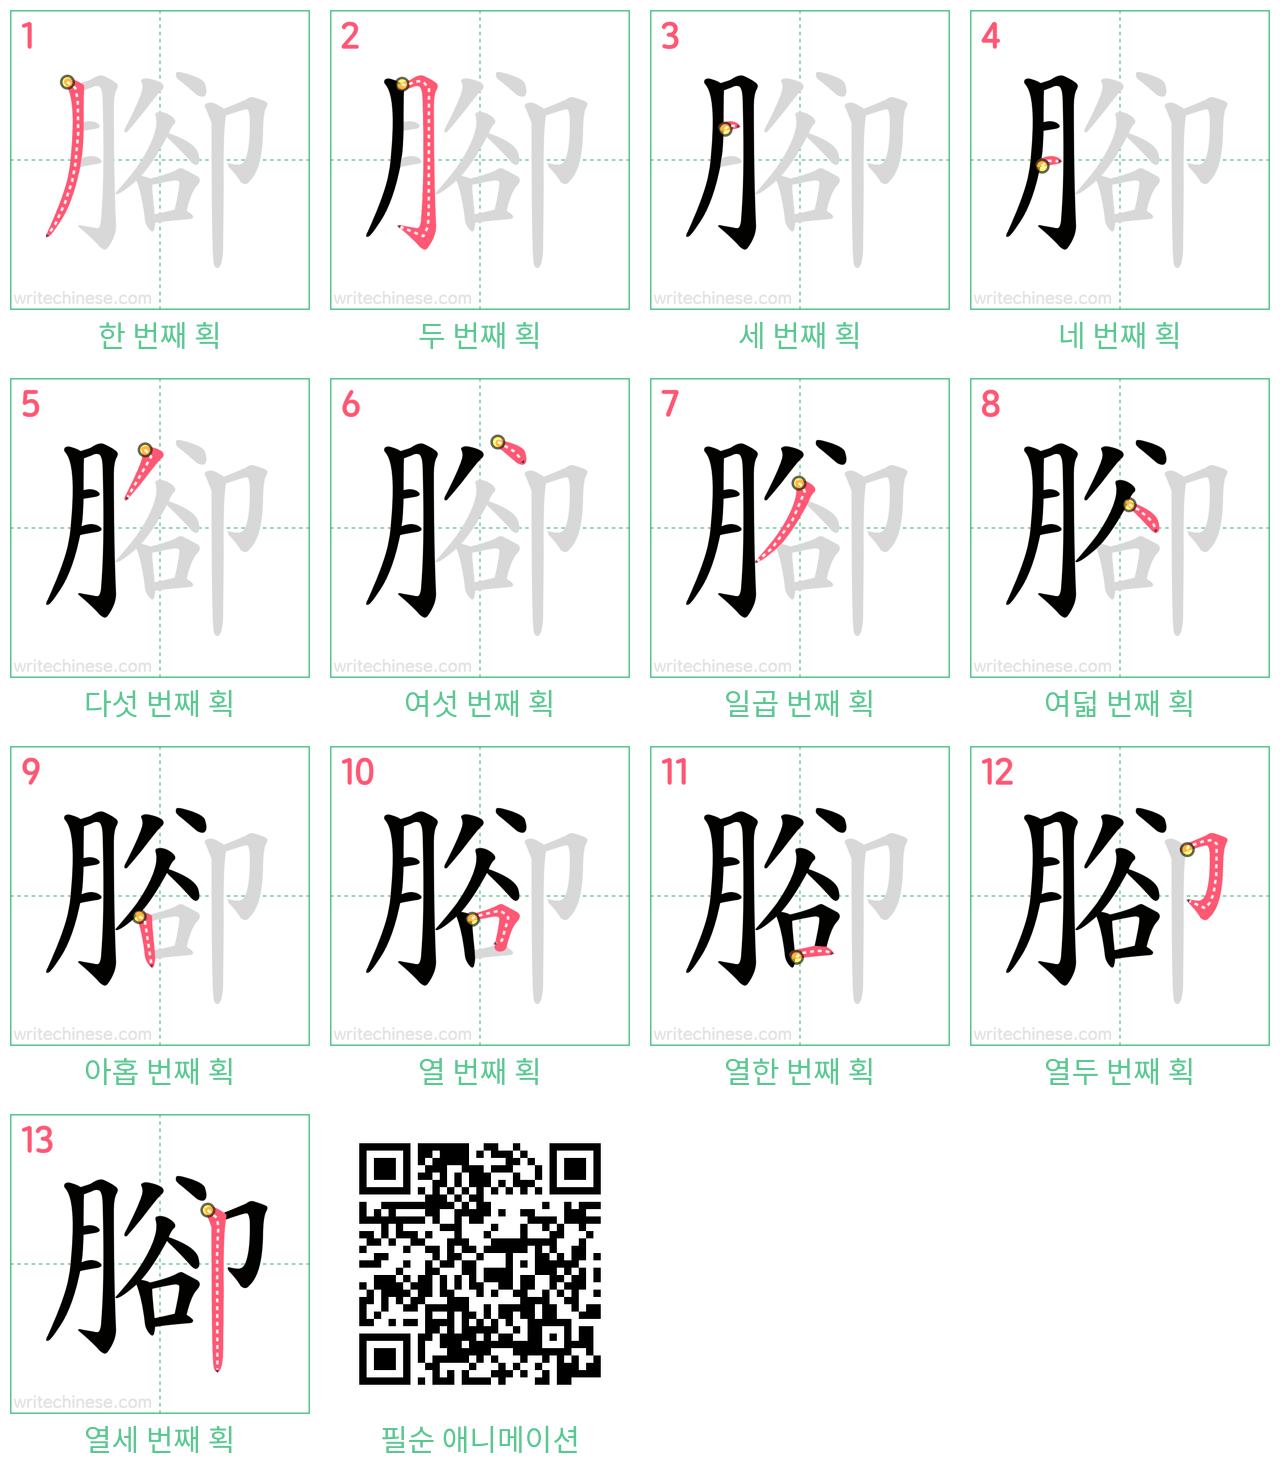 腳 step-by-step stroke order diagrams